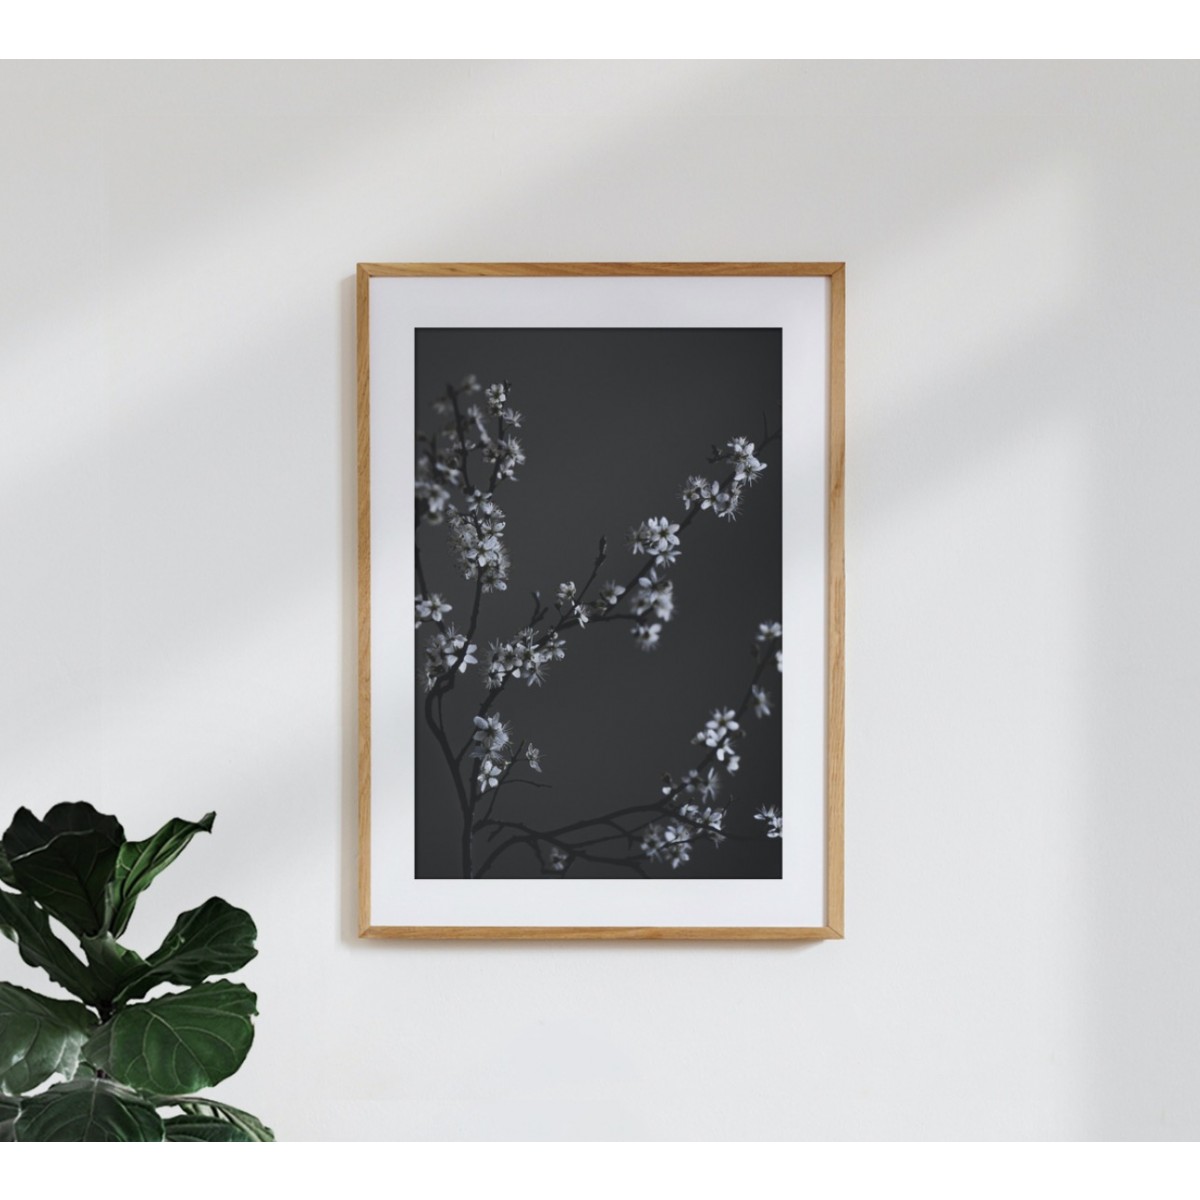 nahili ARTPRINT / POSTER "moody flower BEAUTY" schwarzer Kirsch-Blüten Druck (DIN A1/A3 & 50x70cm) Fotografie